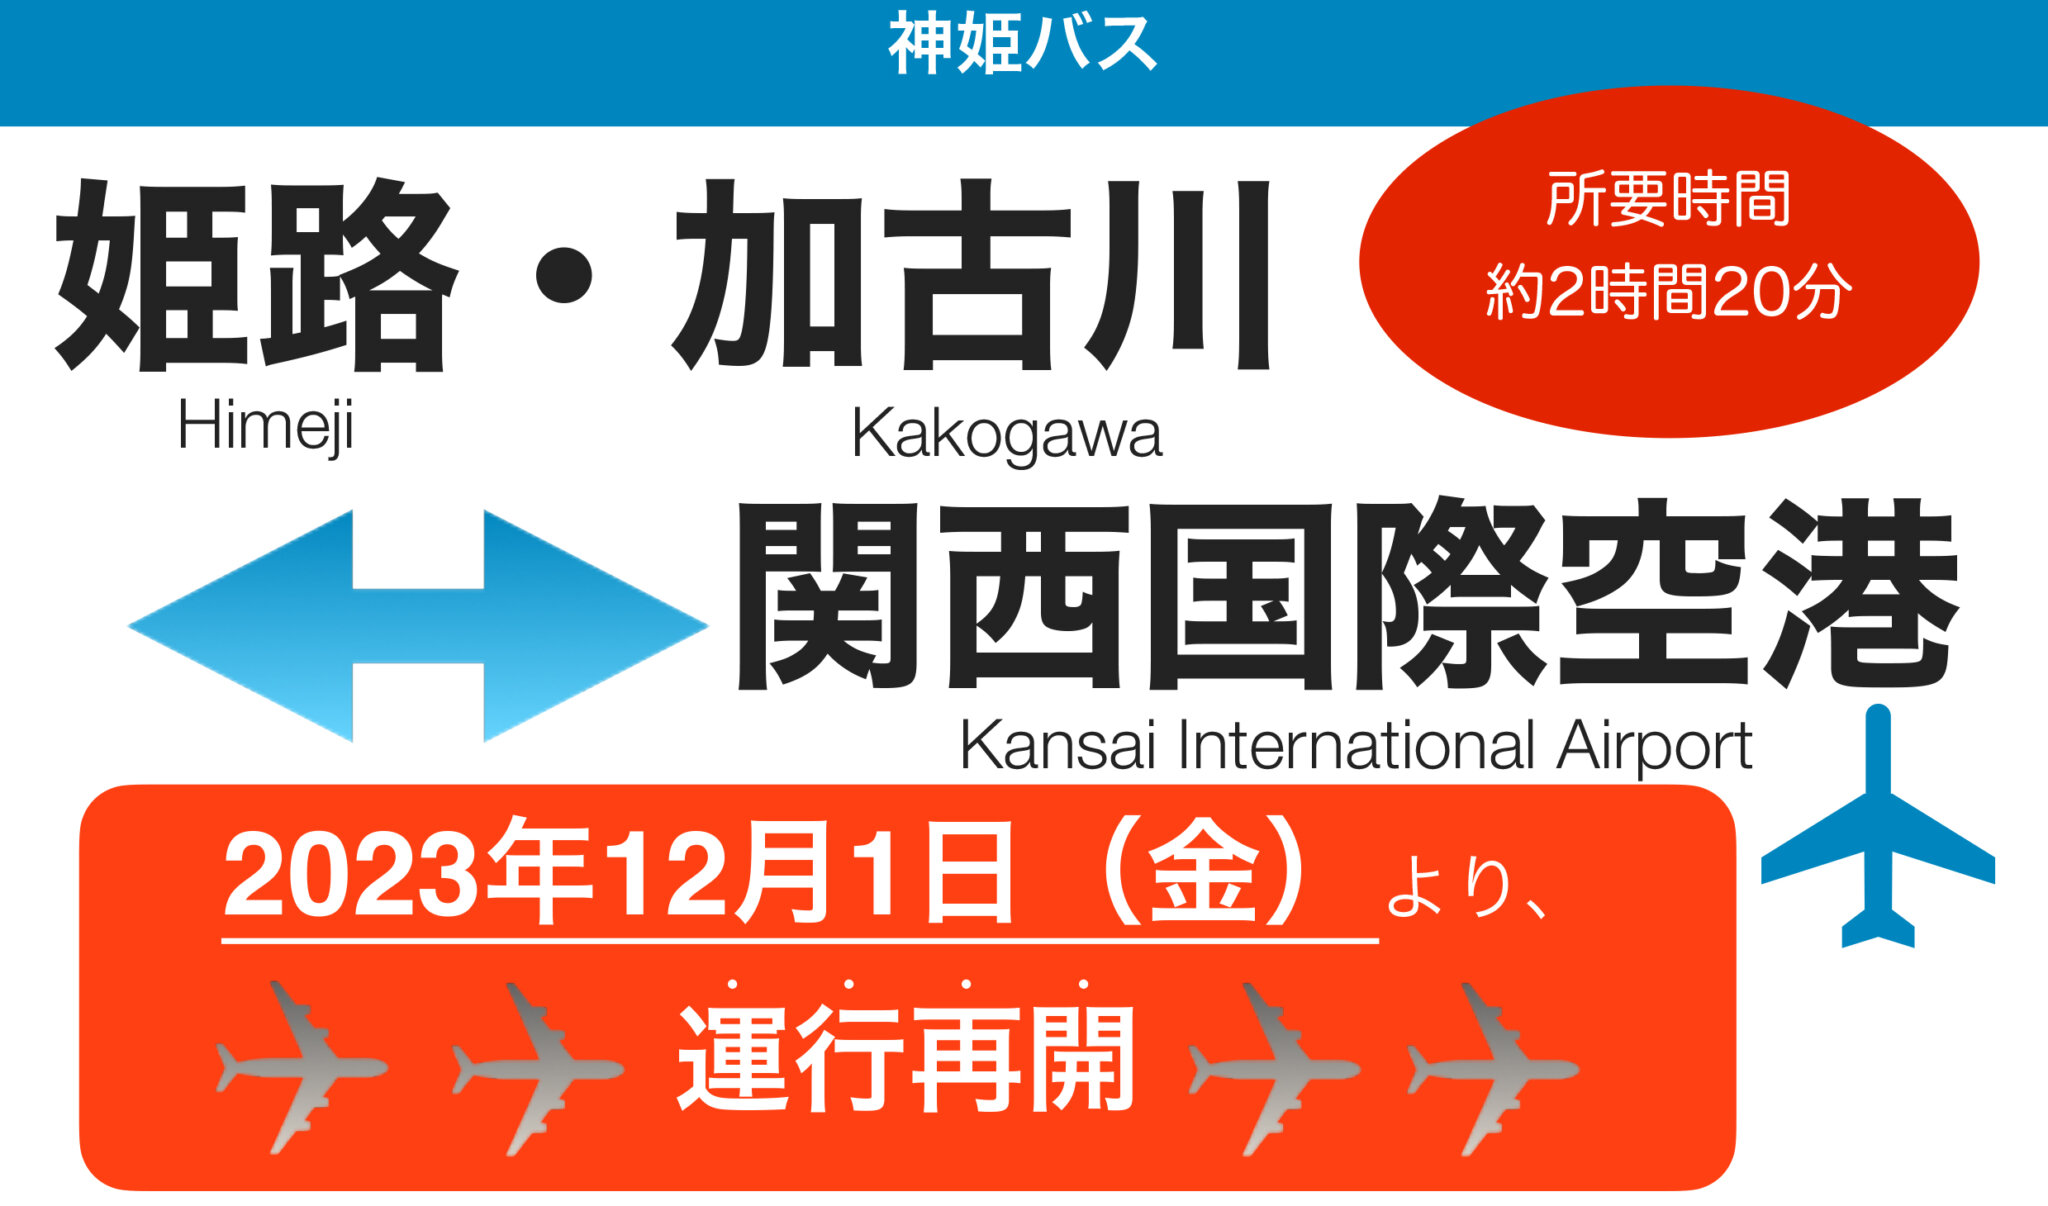 姫路・加古川-関西国際空港神姫バスの空港リムジンバス運行再開2023年12月1日より